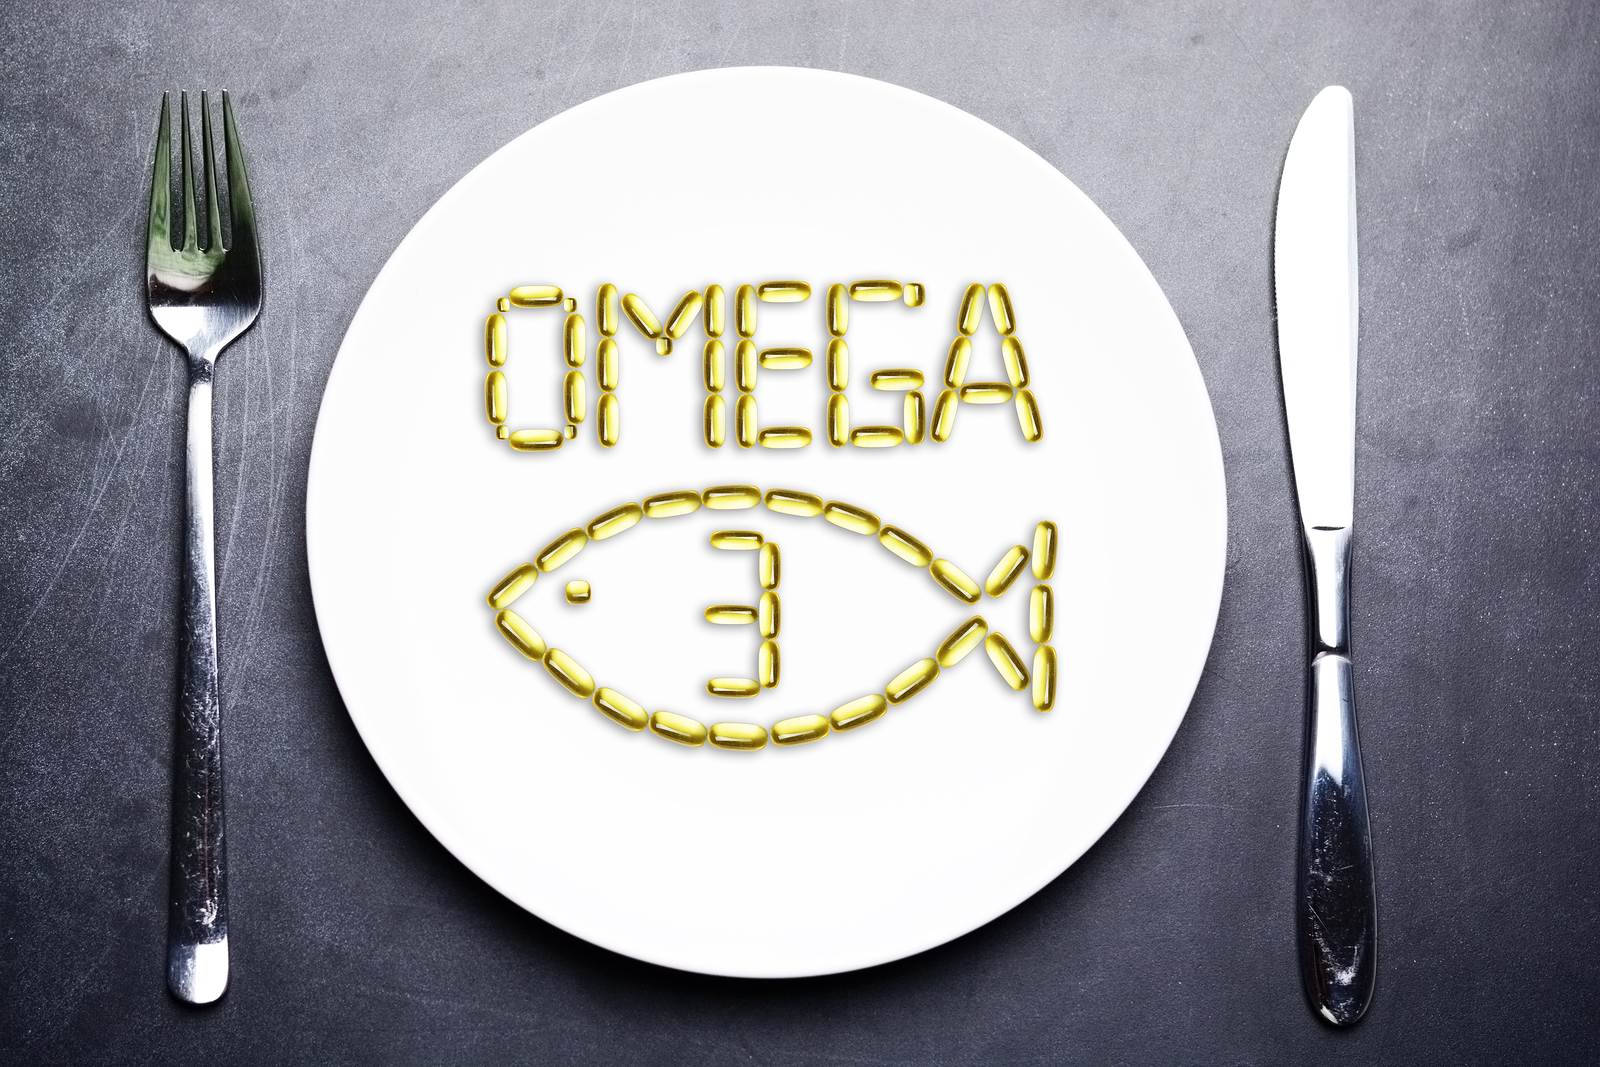 Az omega-3 zsírsavak, gyulladáscsökkentő hatásúak